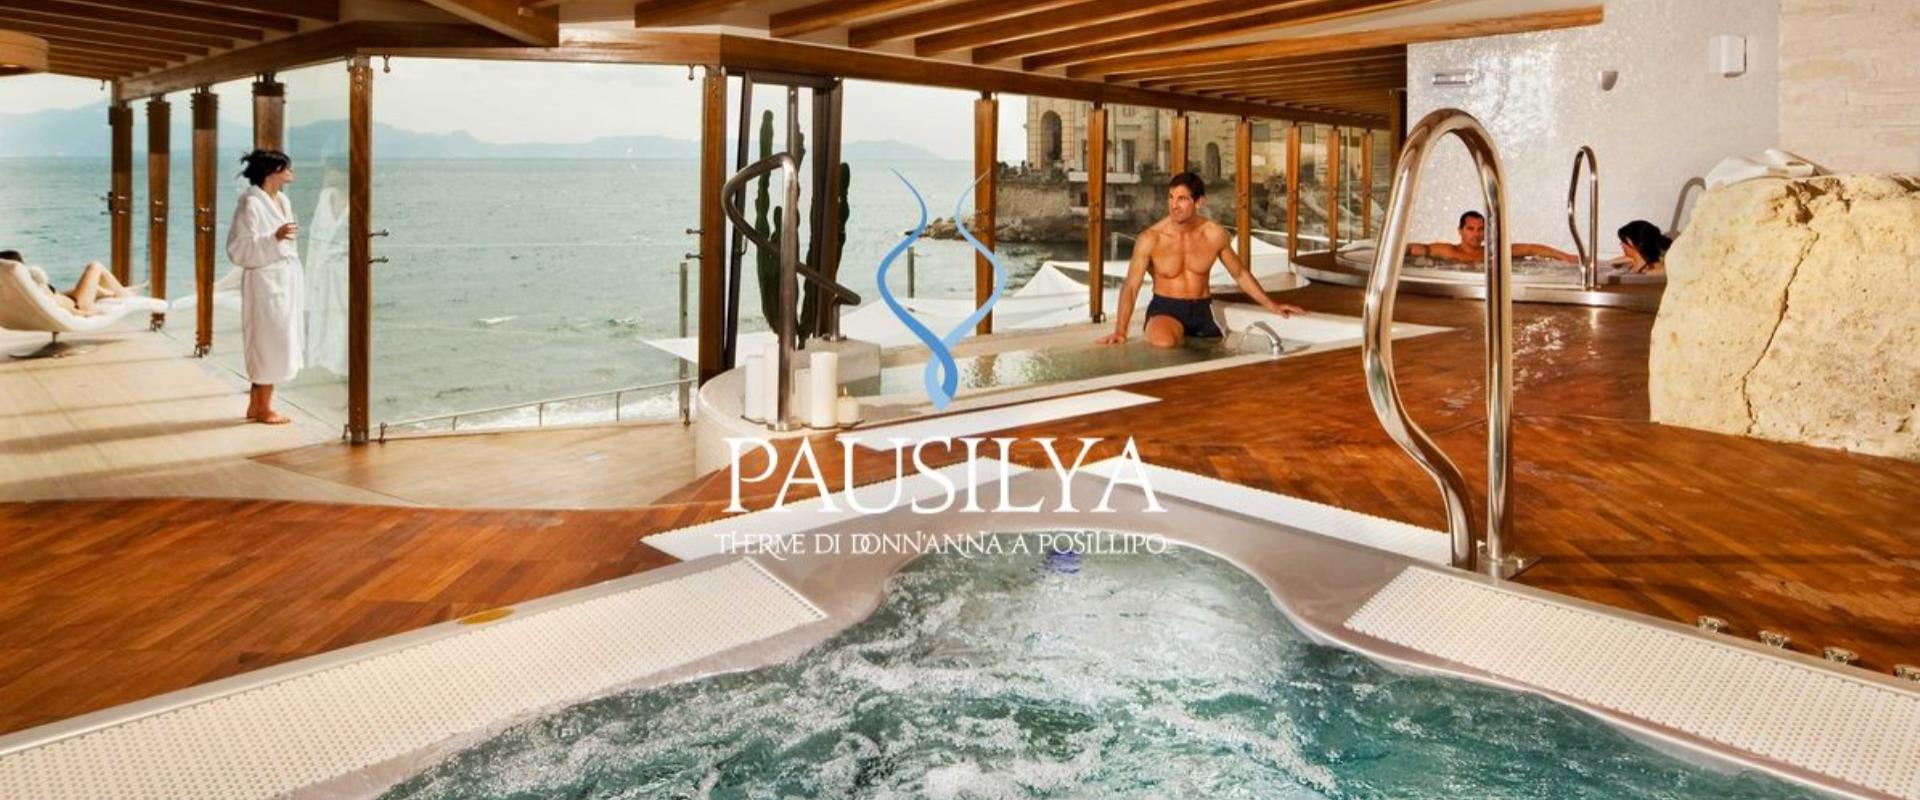 Découvrez le SPA Pausilya un arrangement avec l'hôtel Paradiso : aucun traitement pour le bien-être de votre corps !